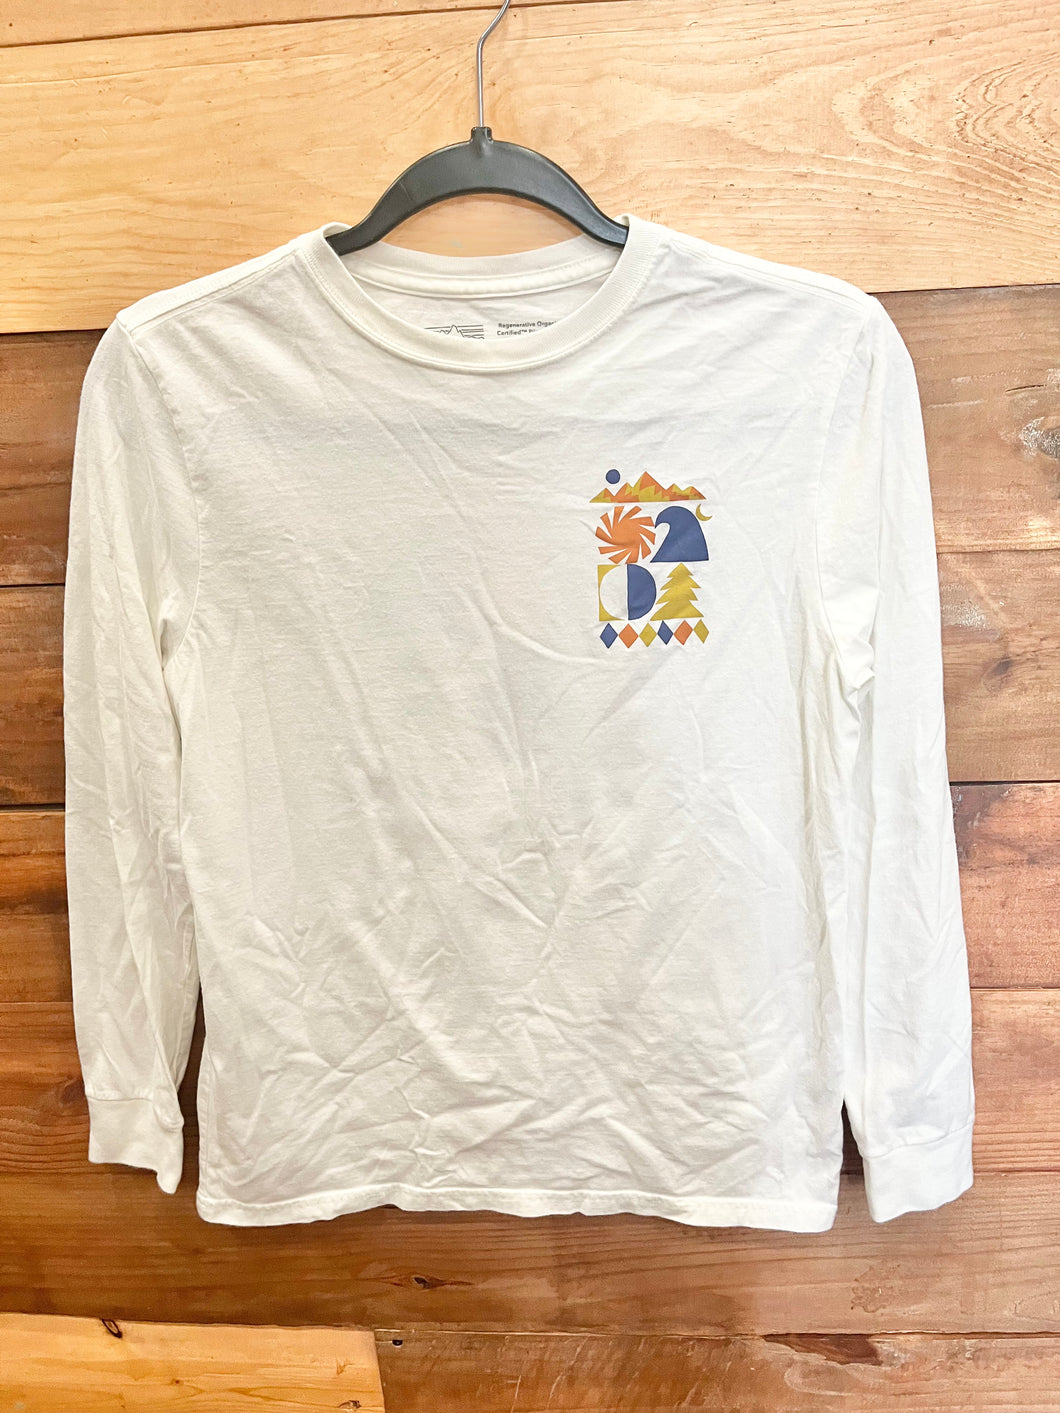 Patagonia Spirited Outdoor Shirt Size 14